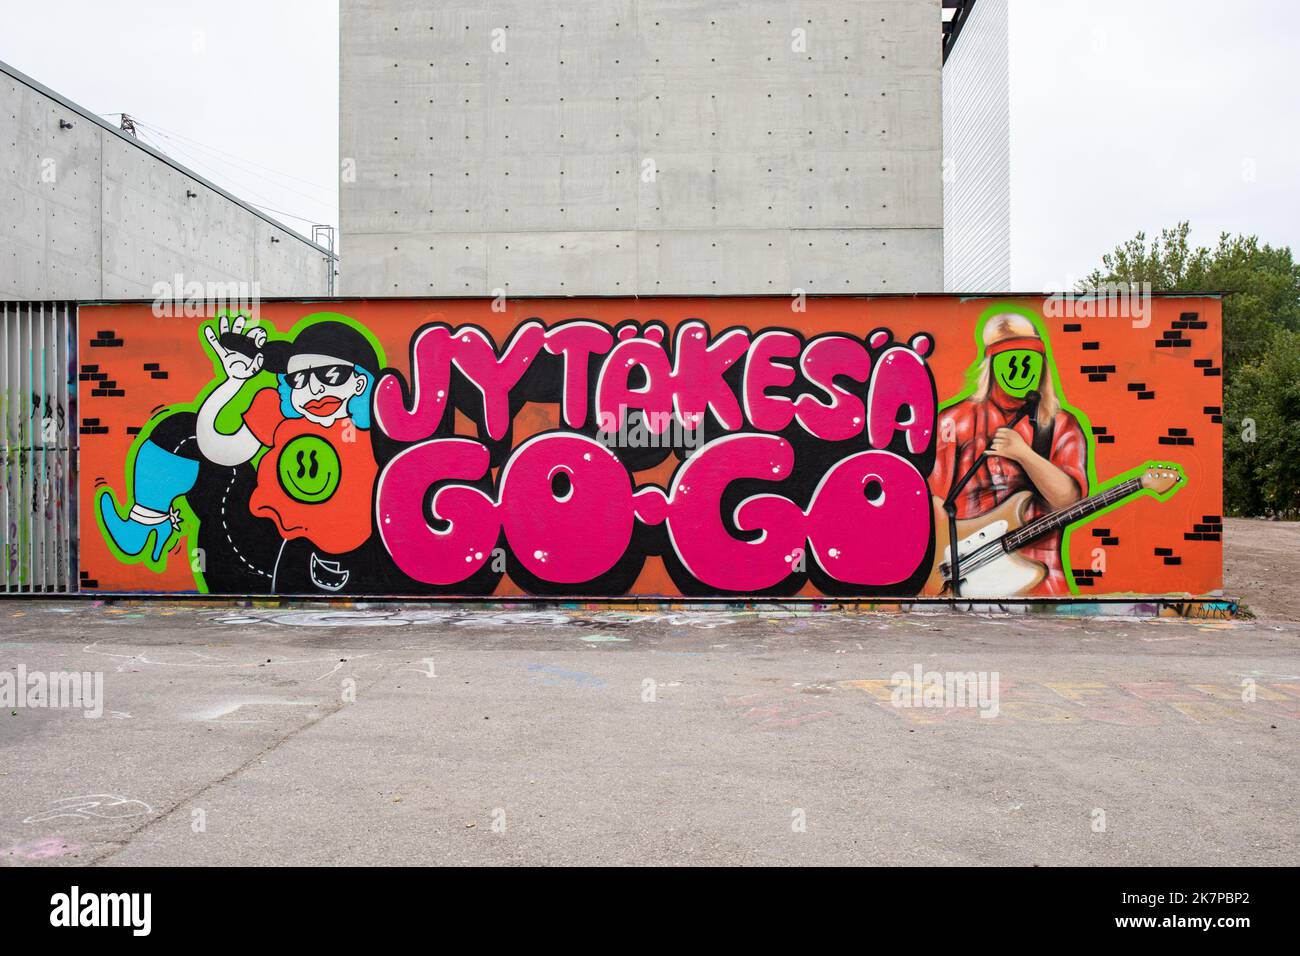 Jytäkesä Go-Go urban summer festival graffiti on Suvilahti graffiti wall in Helsinki, Finland Stock Photo